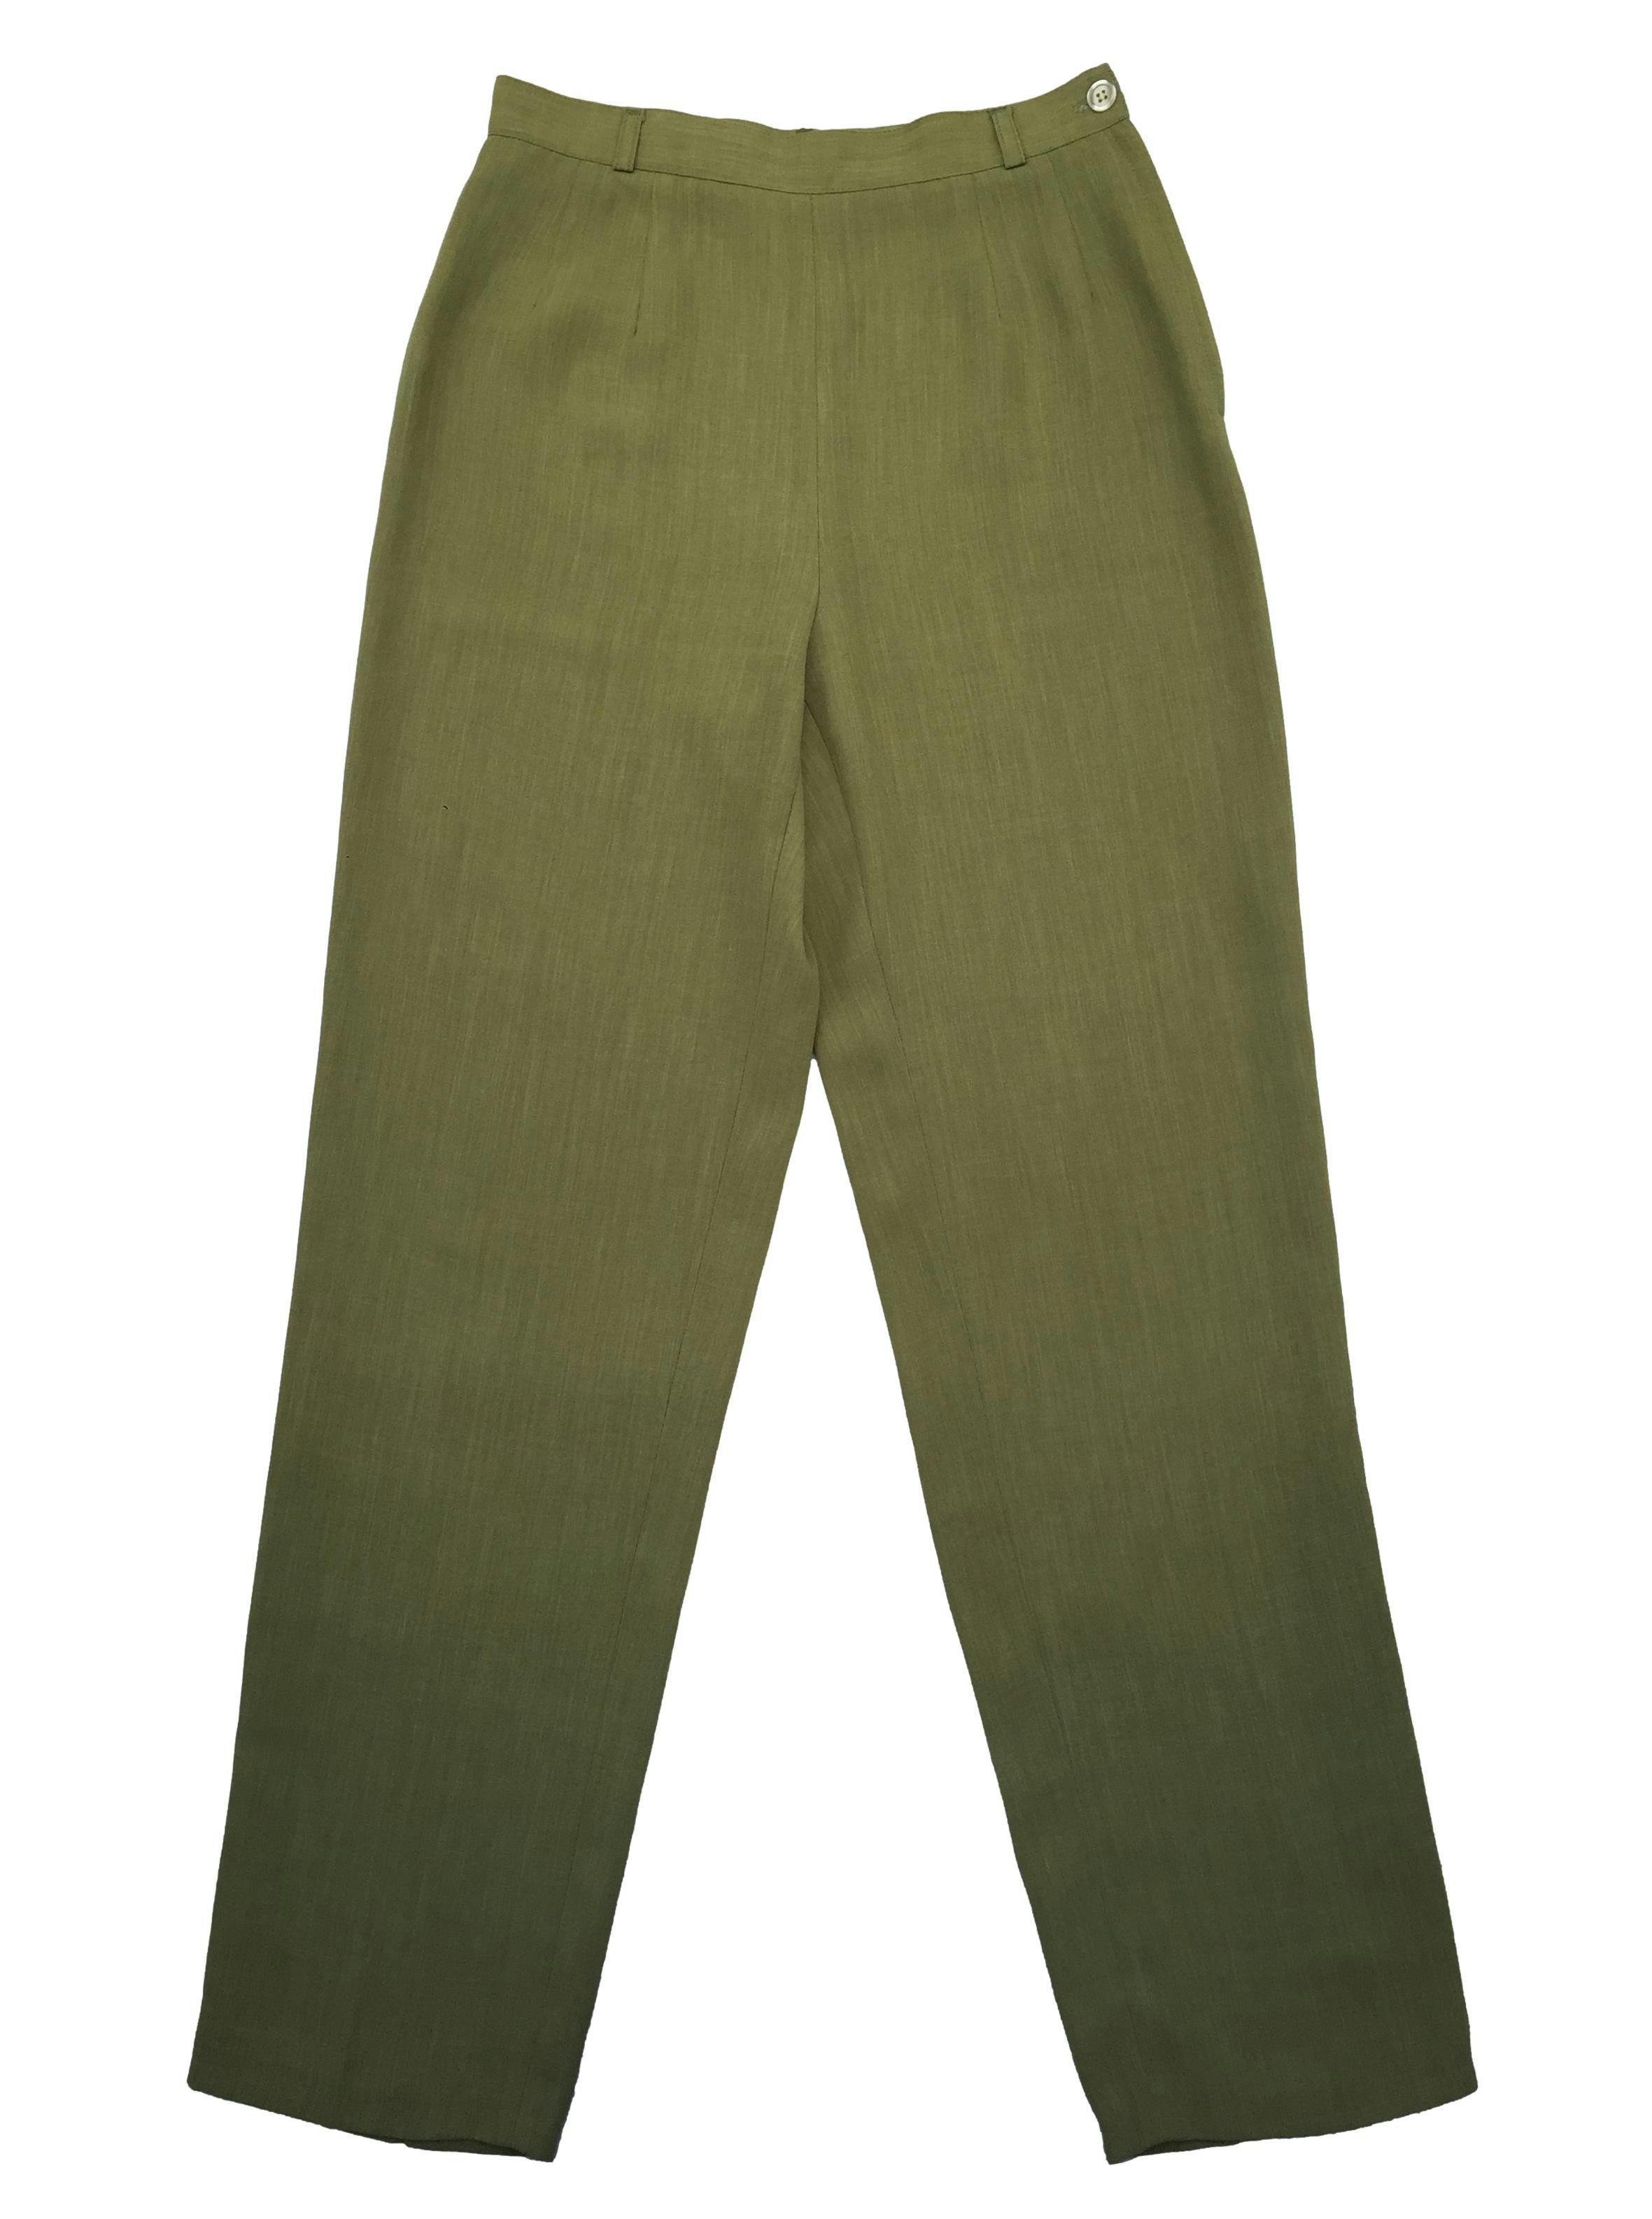 Pantalón verde tipo sastre a la cintura, tiene pinzas, pierna recta y linda caída. Cintura 68cm Tiro 29cm Largo 103cm